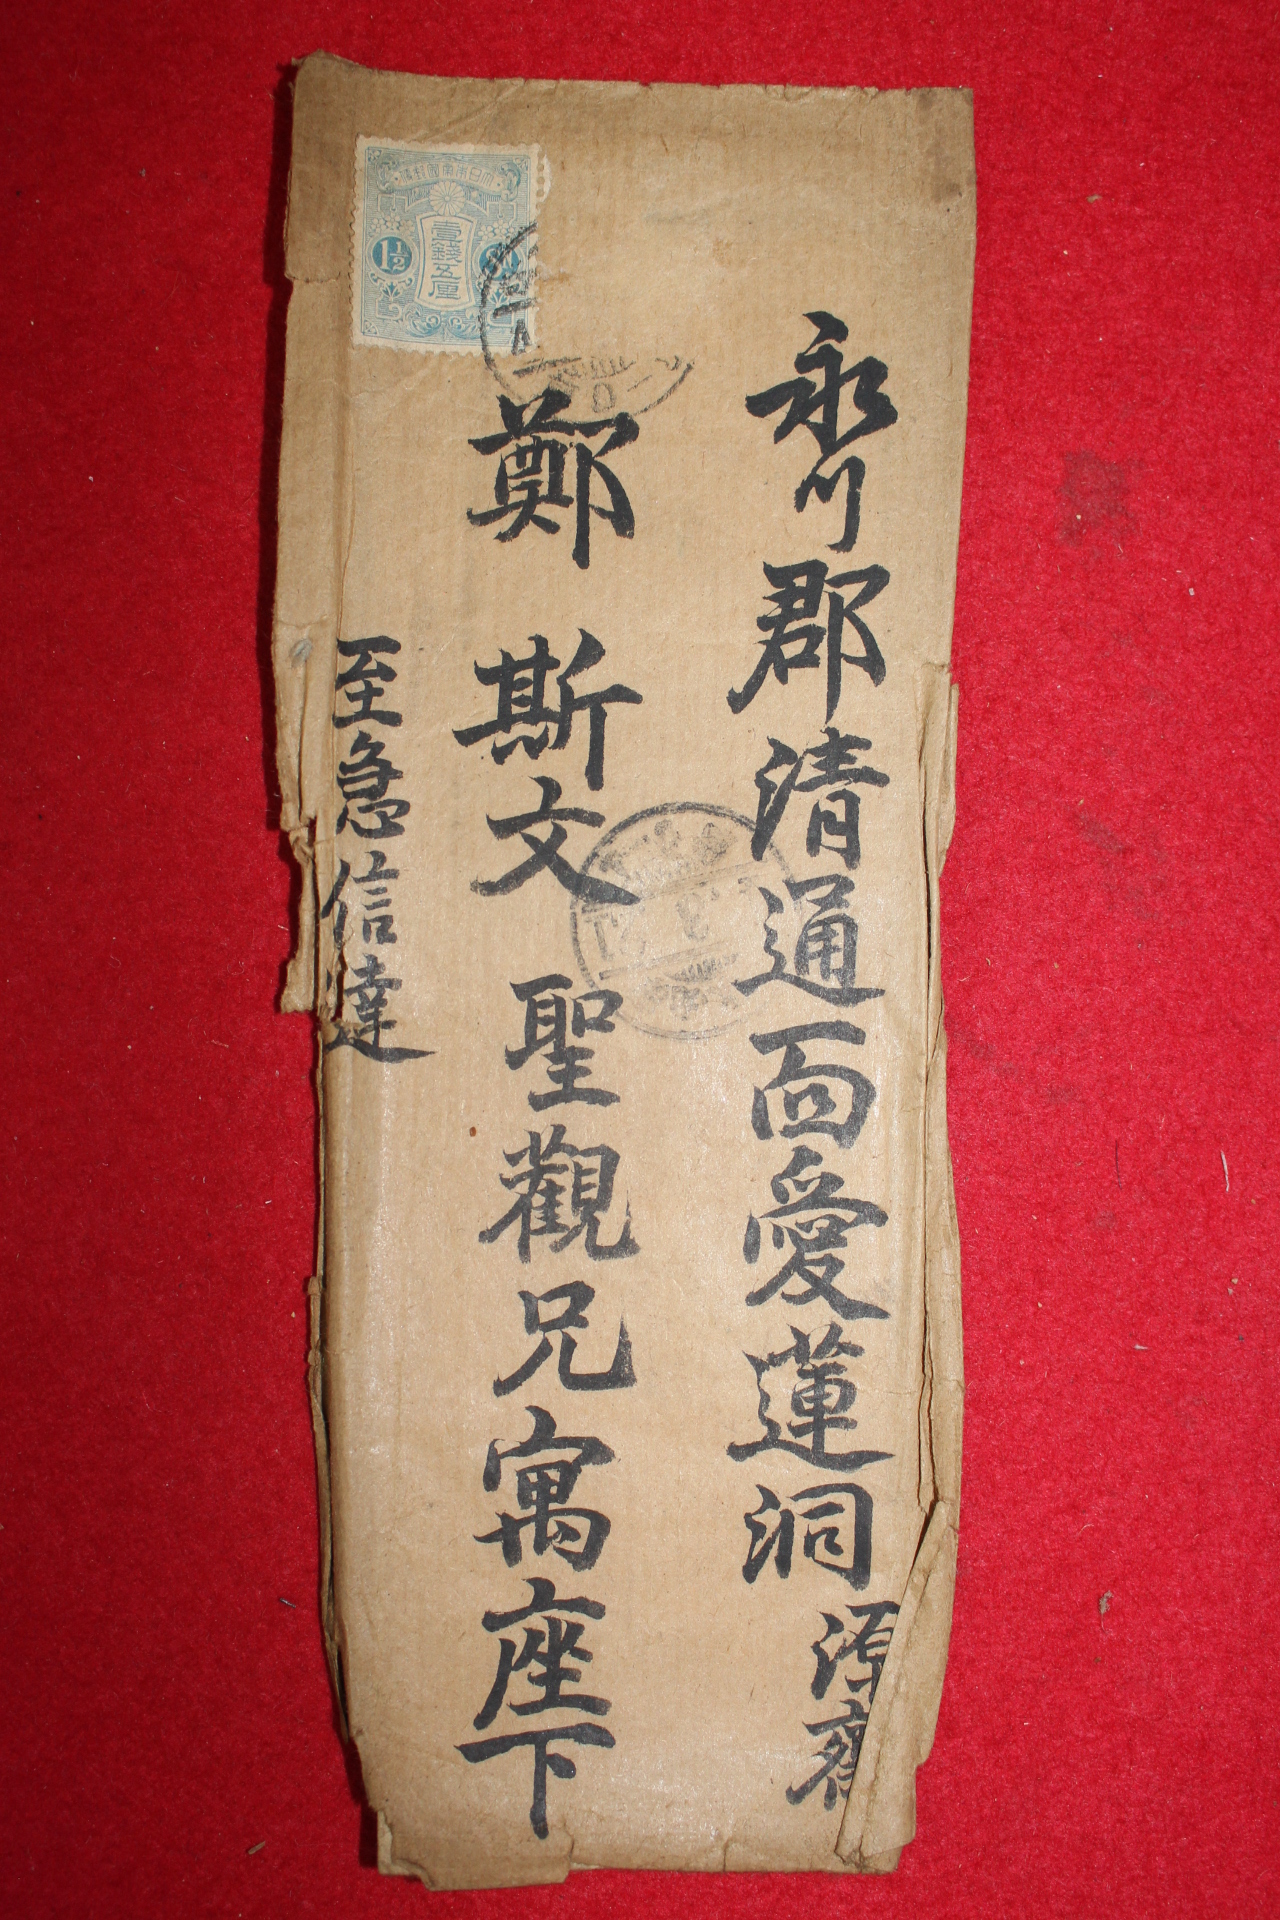 43-1929년(己巳) 사천 서유(徐遊) 우편사용실체